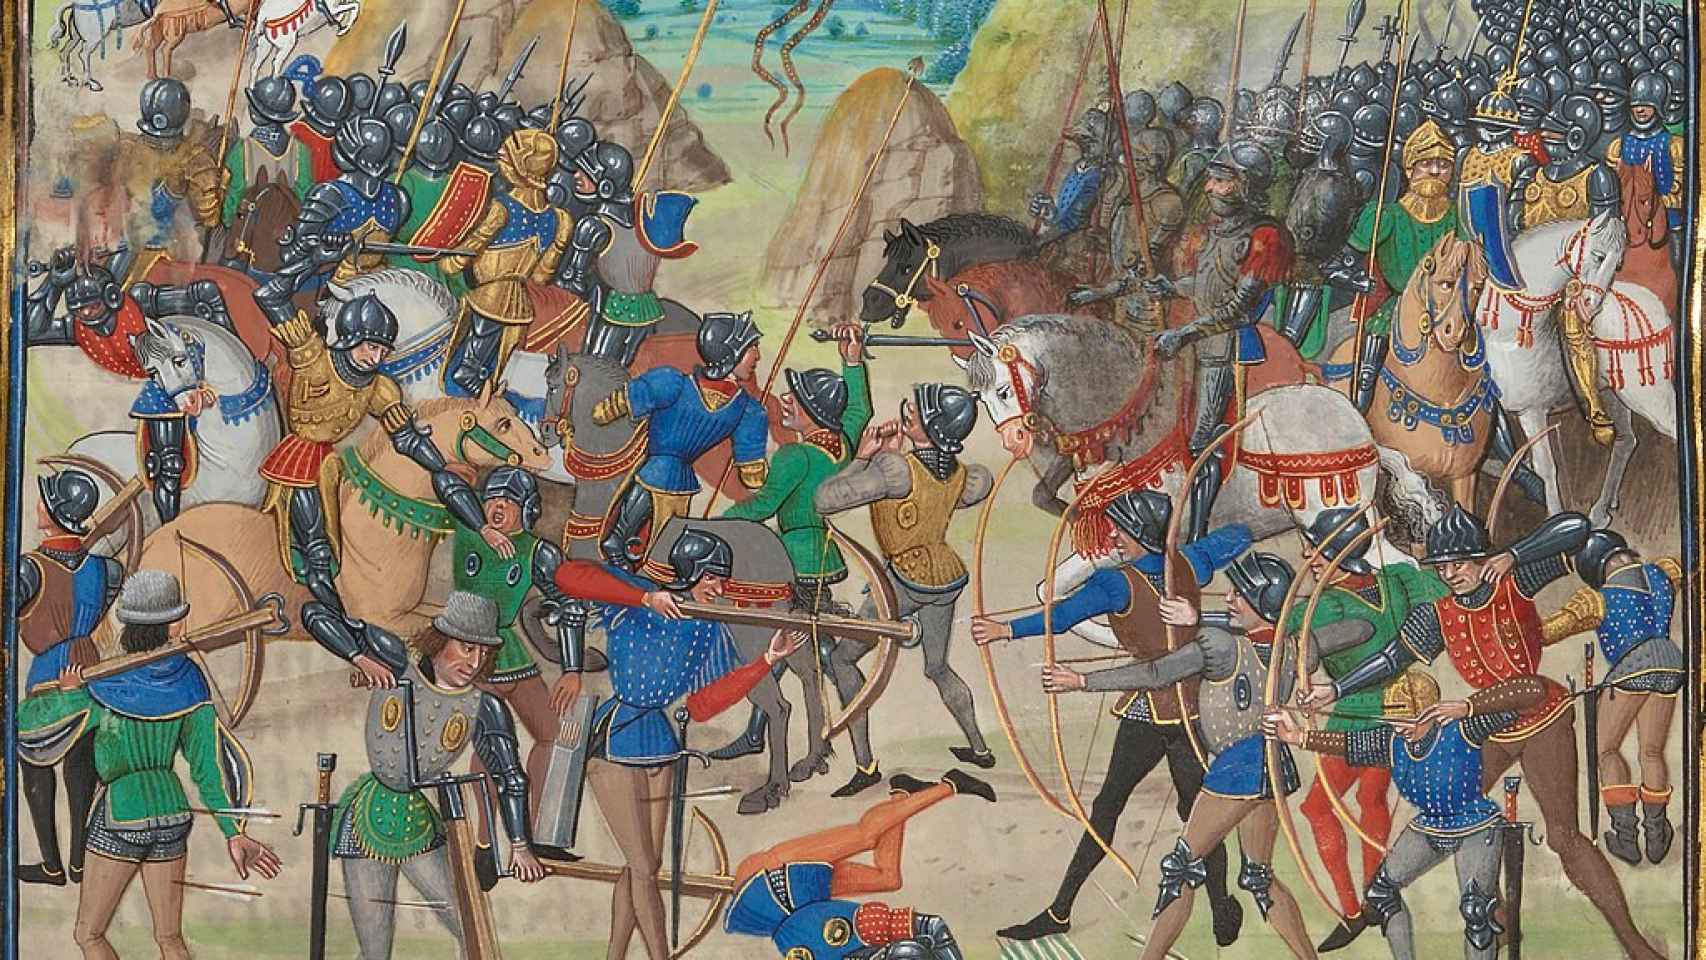 Miniatura medieval sobre la batalla de Crécy de las crónicas de Jean Froissart. Siglo XV